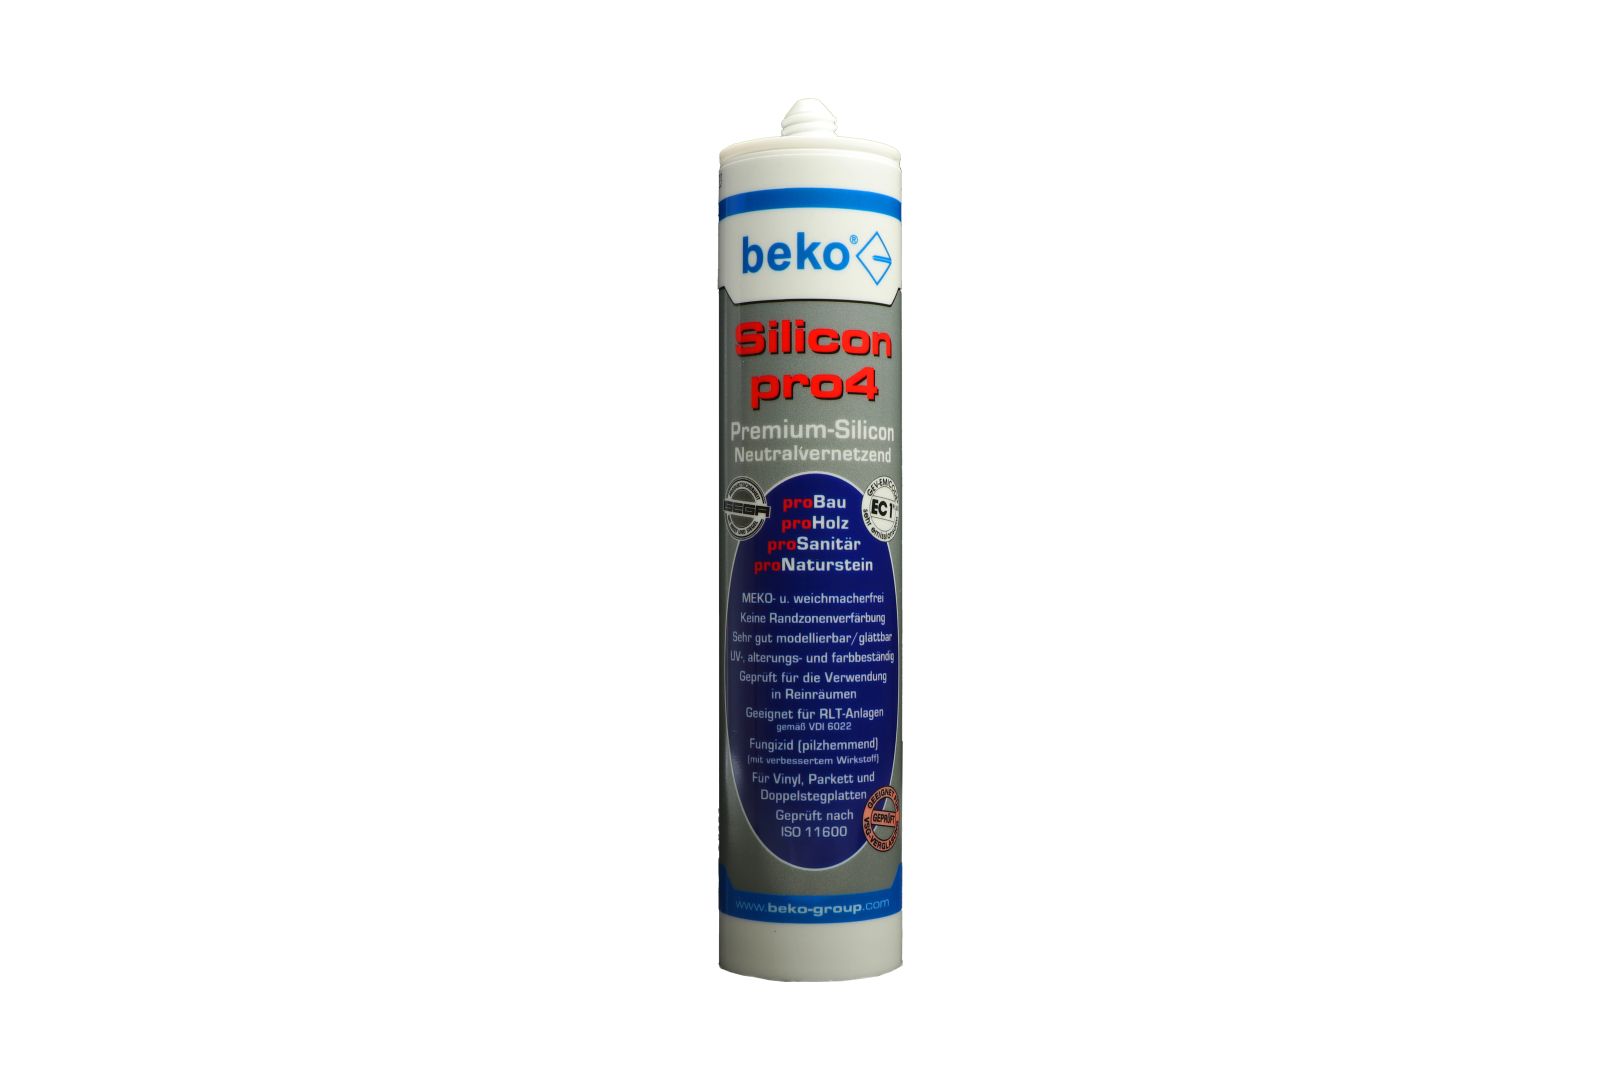 beko Silicon pro4, Premium-Silicon, Silikon-Dichtstoff, neutralvernetzend, dunkelbraun/mahagoni/teak, 310 ml